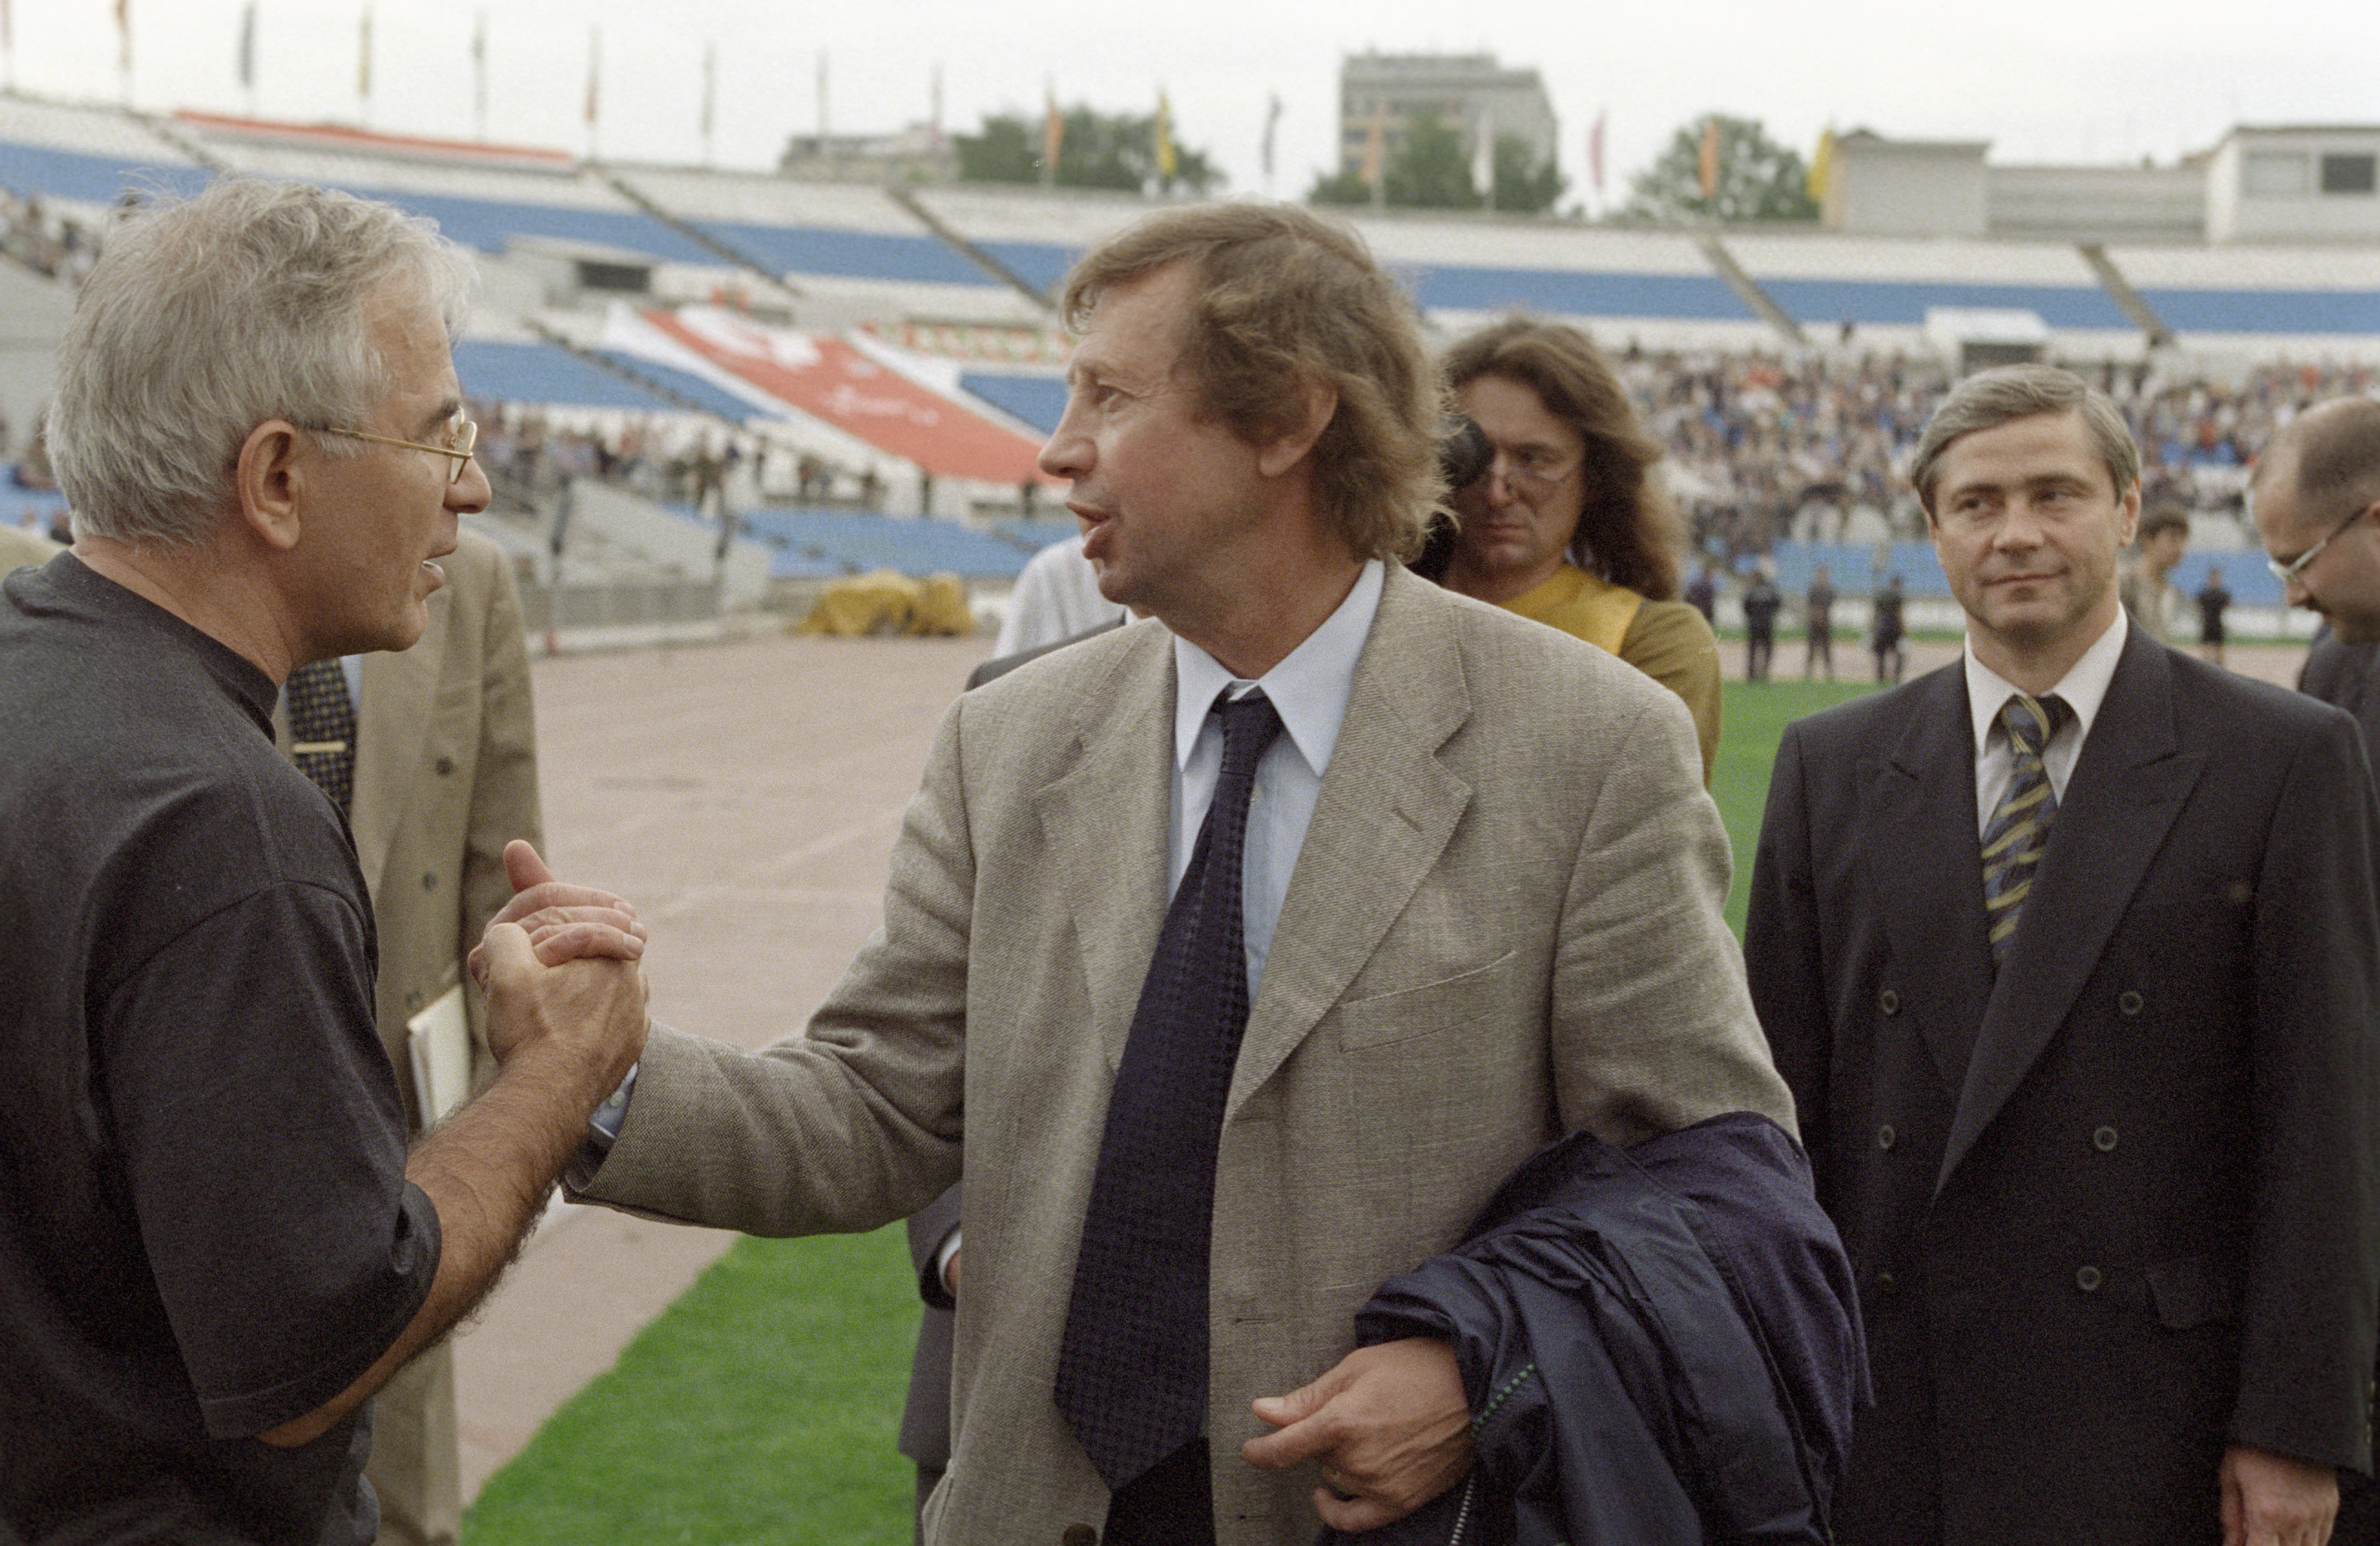 Гаджиев и Сёмин в далёком 2001 году. Фото: © РИА Новости/Владимир Федоренко